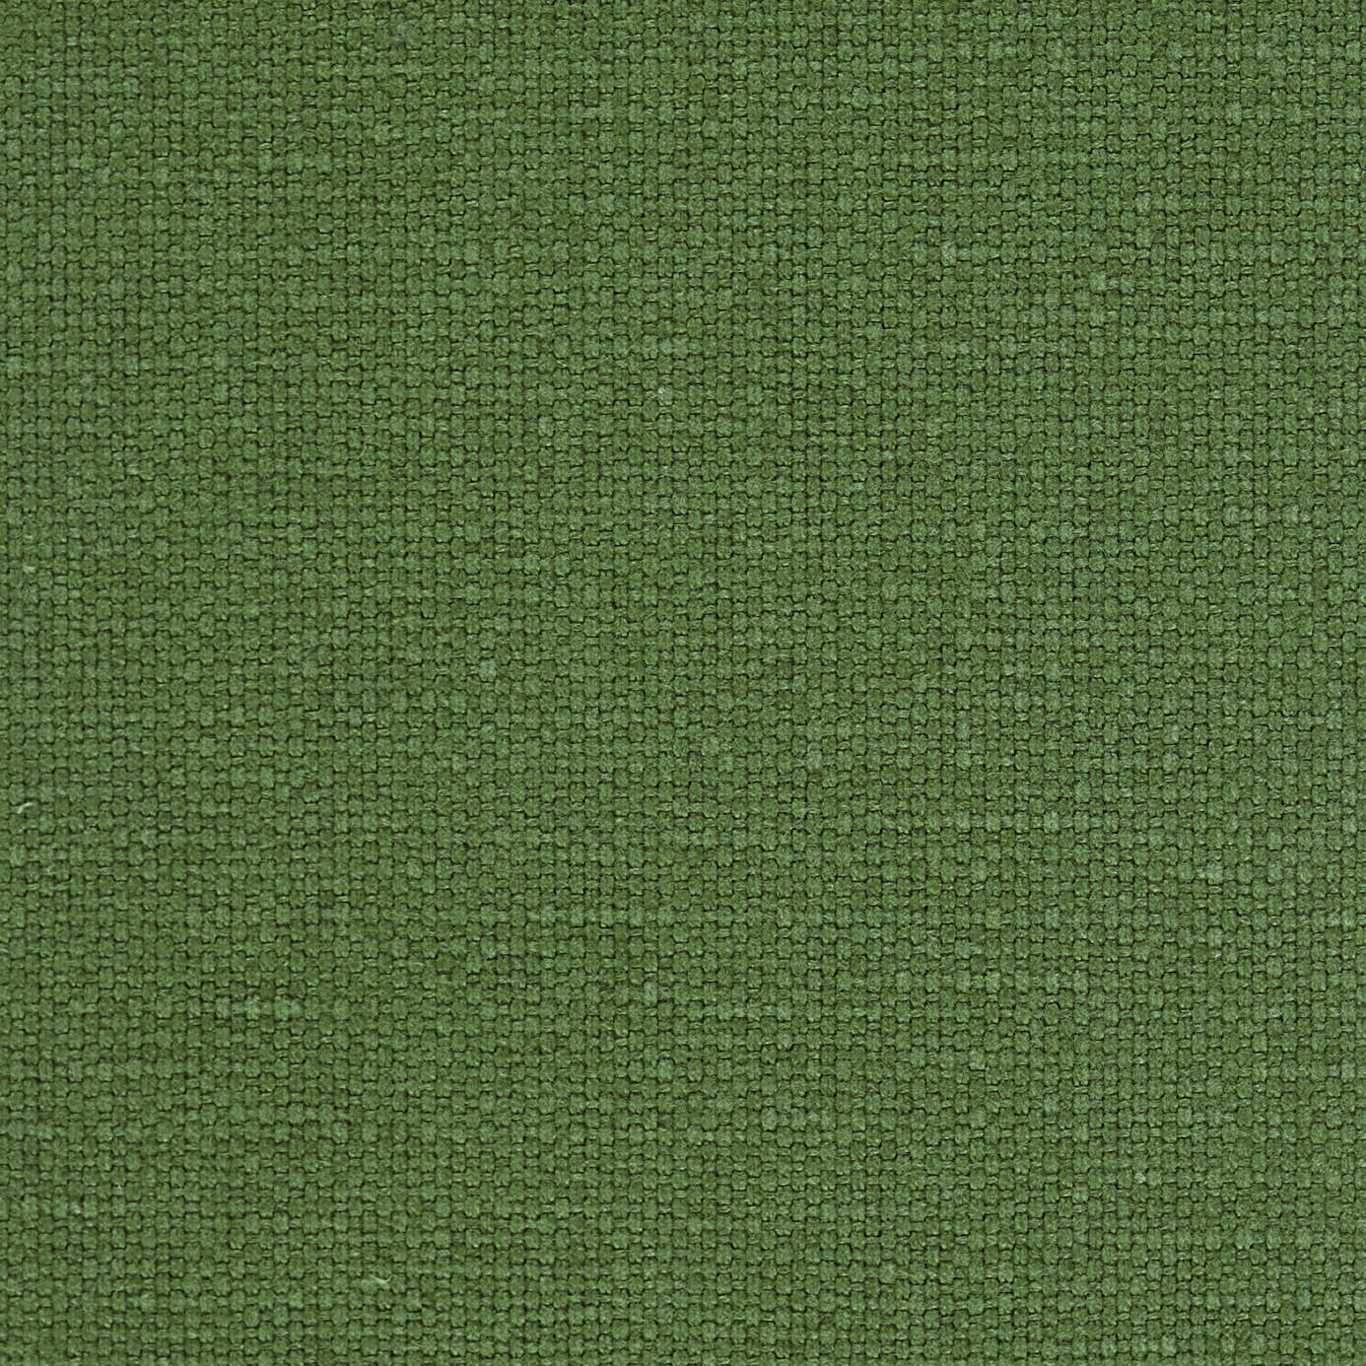 Quadrant Fern Fabric by HAR